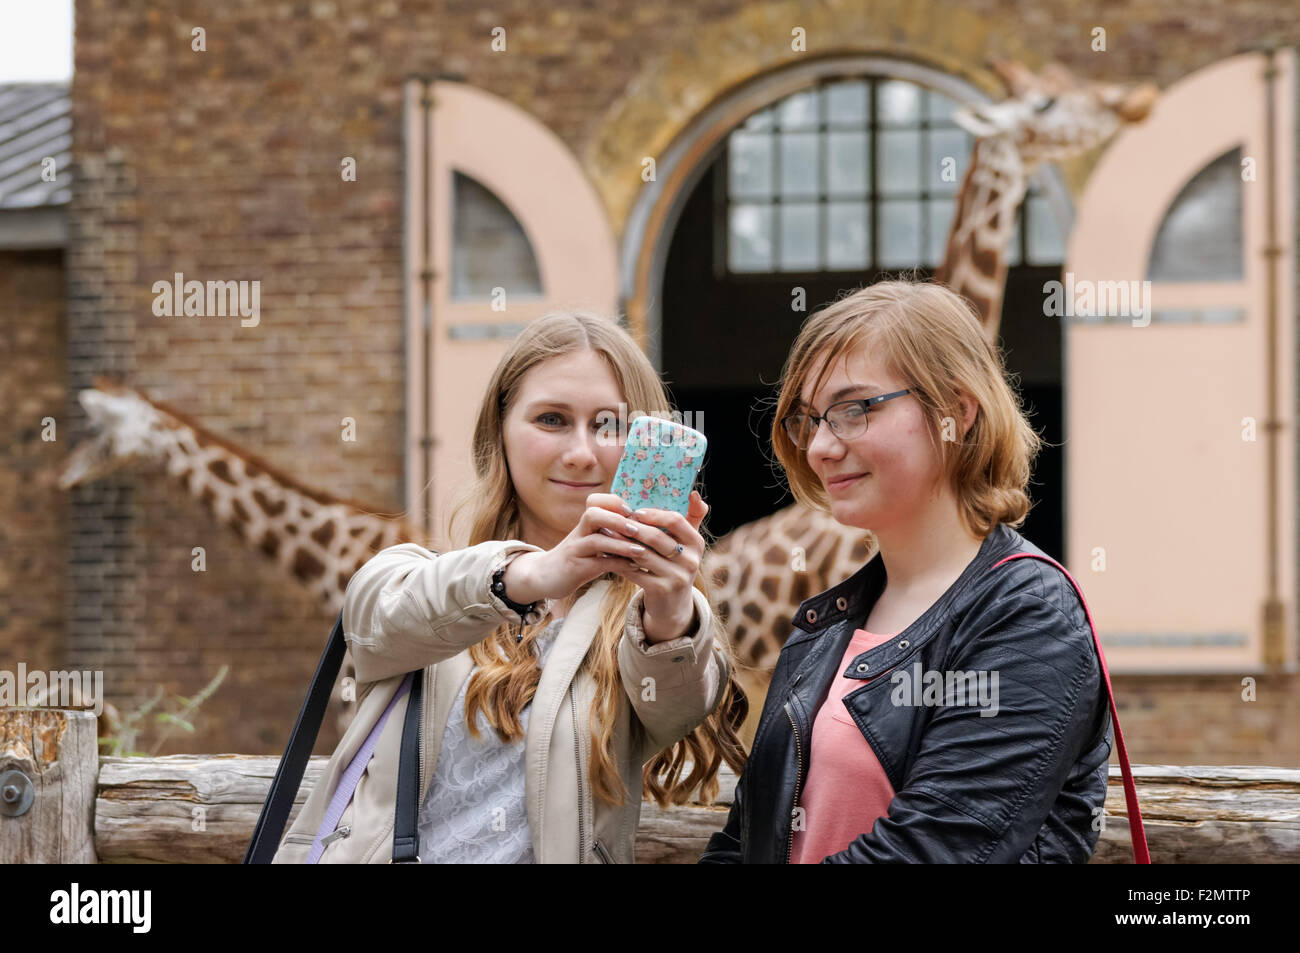 Deux adolescents qui se font autoportrait au ZSL London Zoo, Londres Angleterre Royaume-Uni Banque D'Images